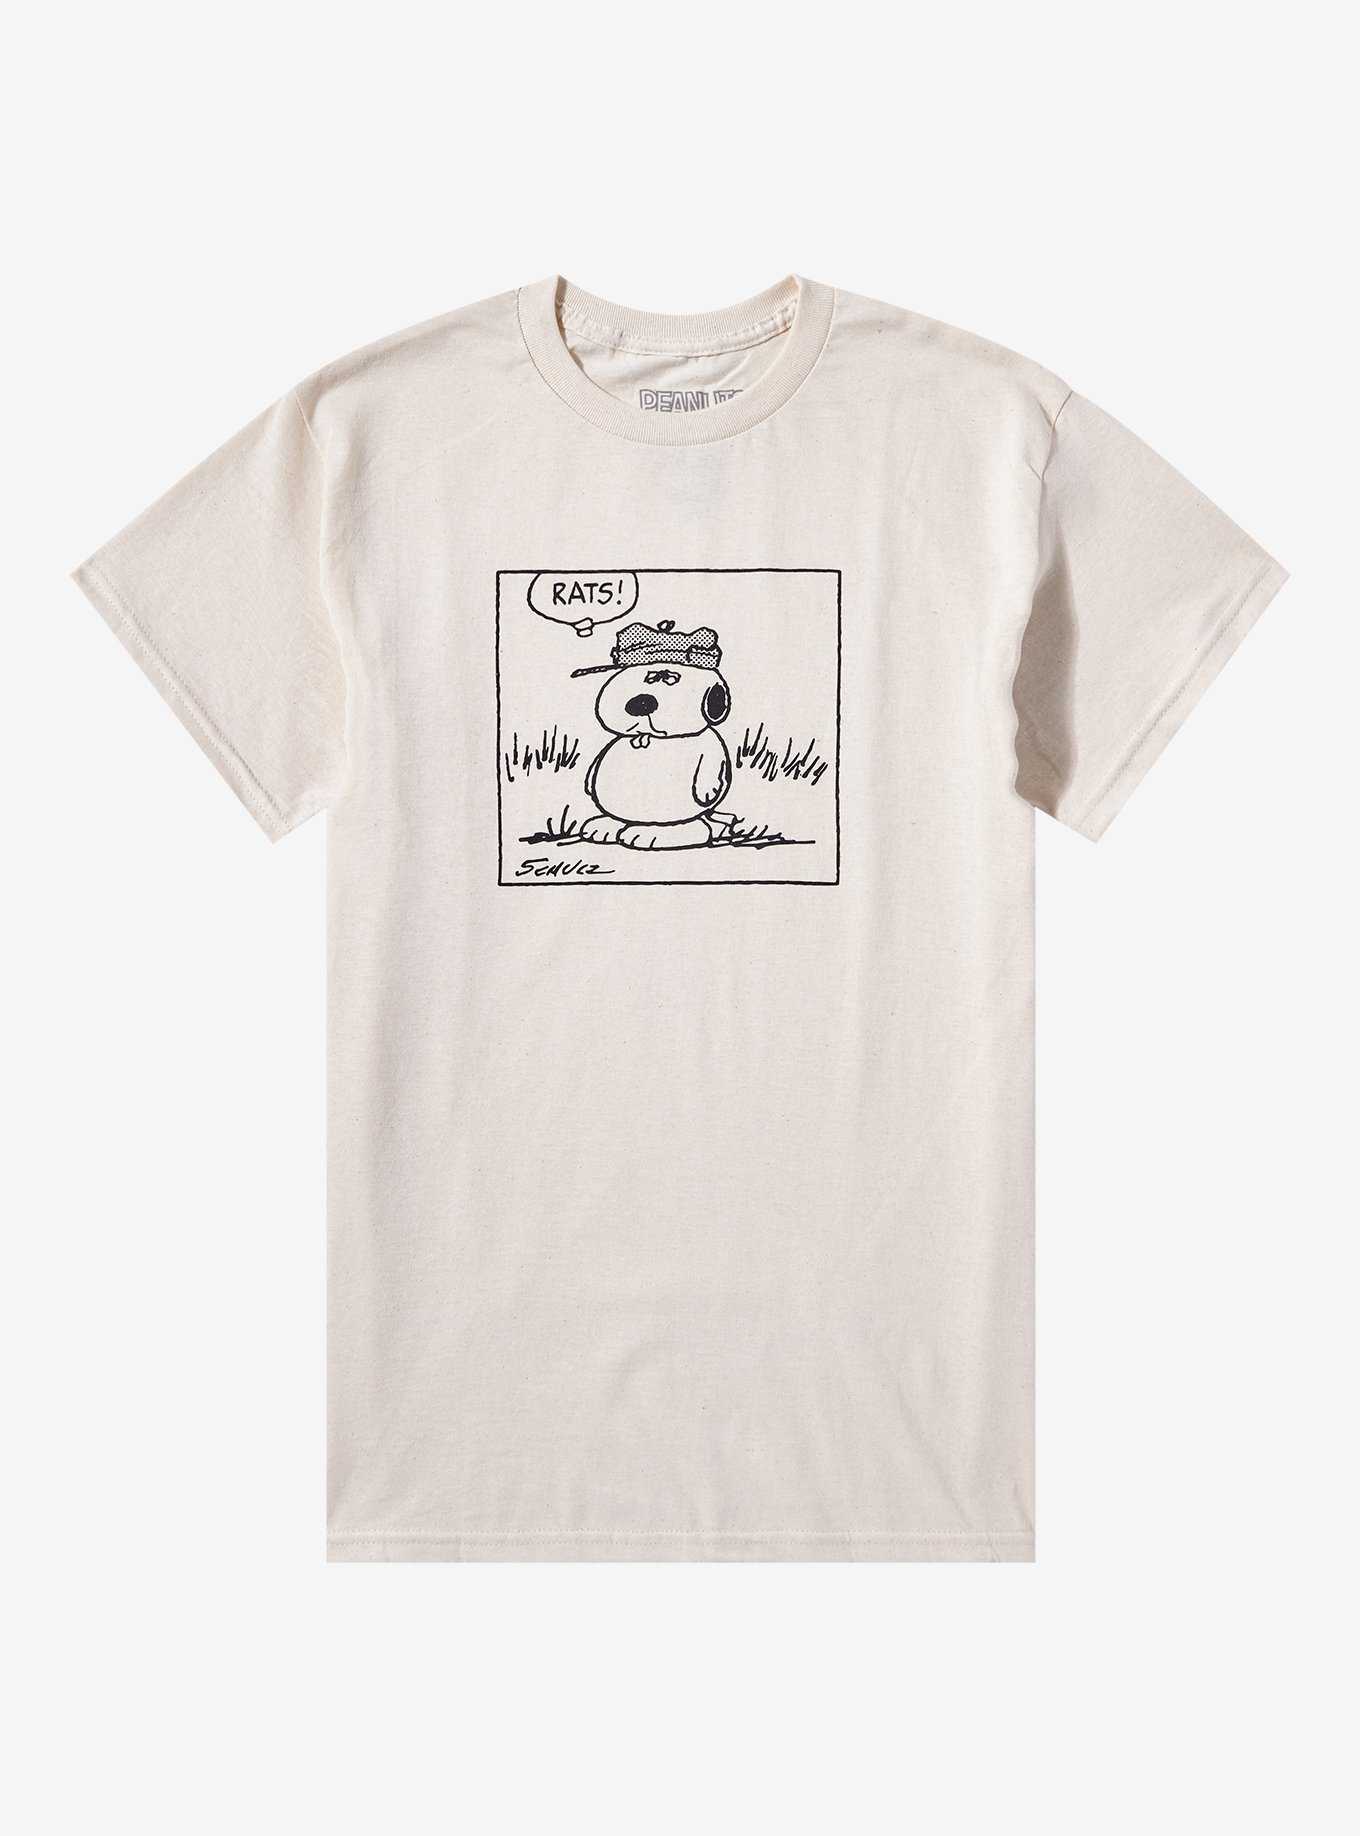 Peanuts Olaf Rats T-Shirt, , hi-res